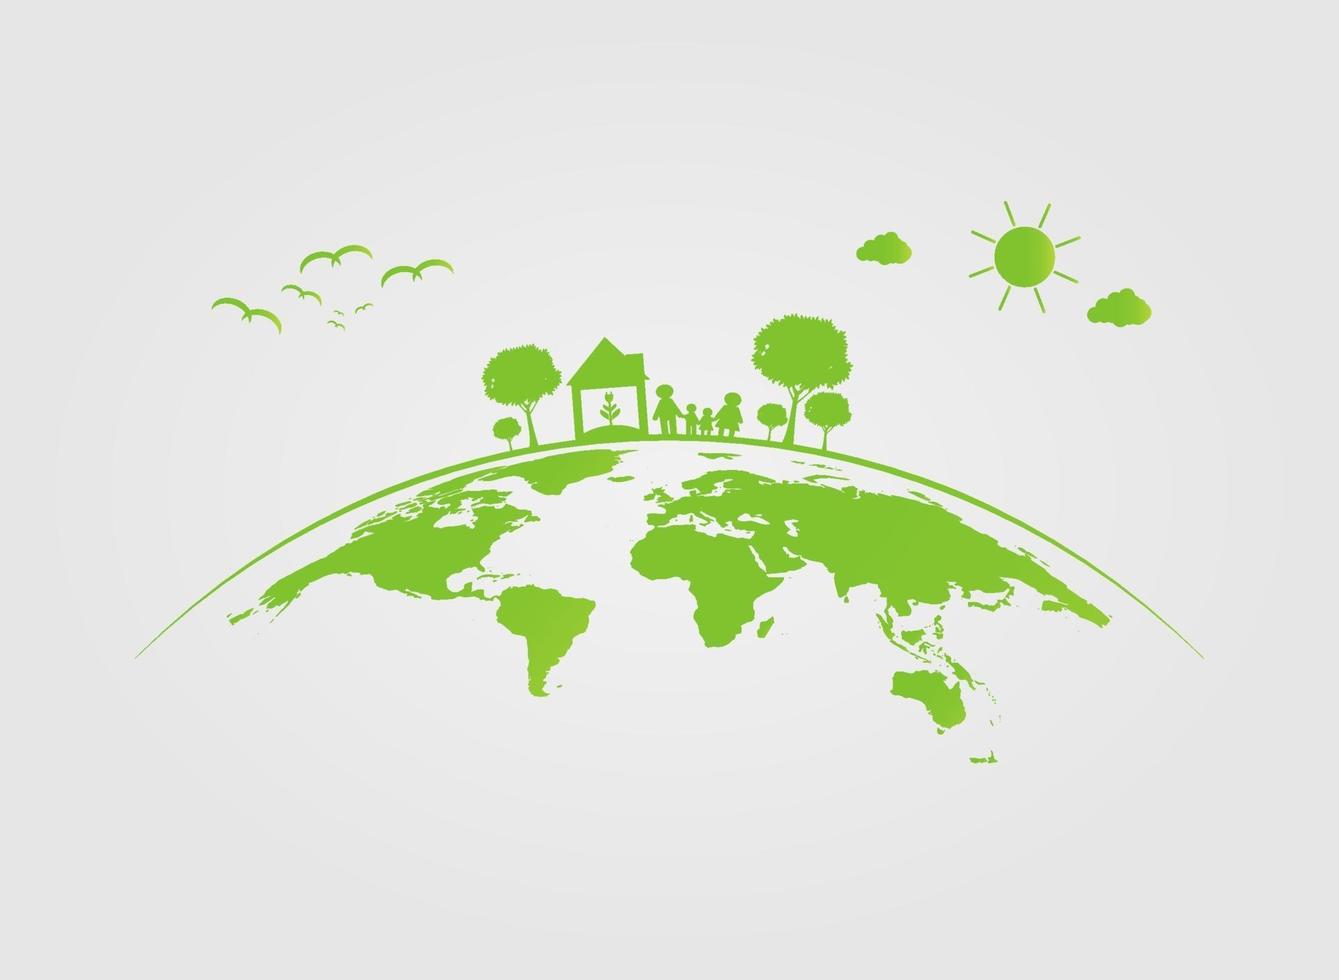 ekologi, träd på jorden städer hjälper världen med miljövänliga konceptidéer. vektorillustration vektor